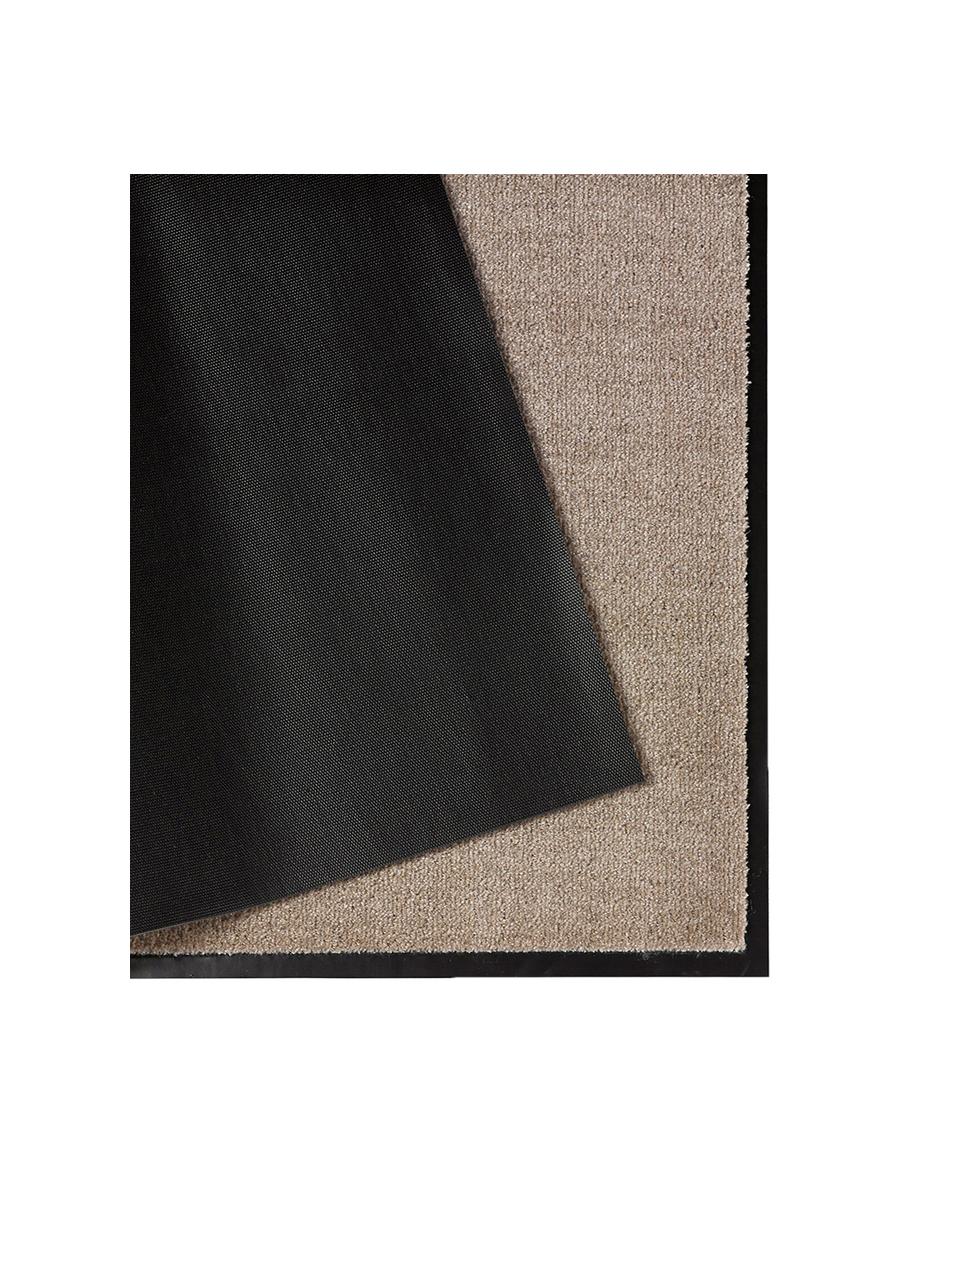 Polyamid-Fußmatte Milo, Vorderseite: Polyamid, Rückseite: Gummi, Taupe, Schwarz, 58 x 90 cm